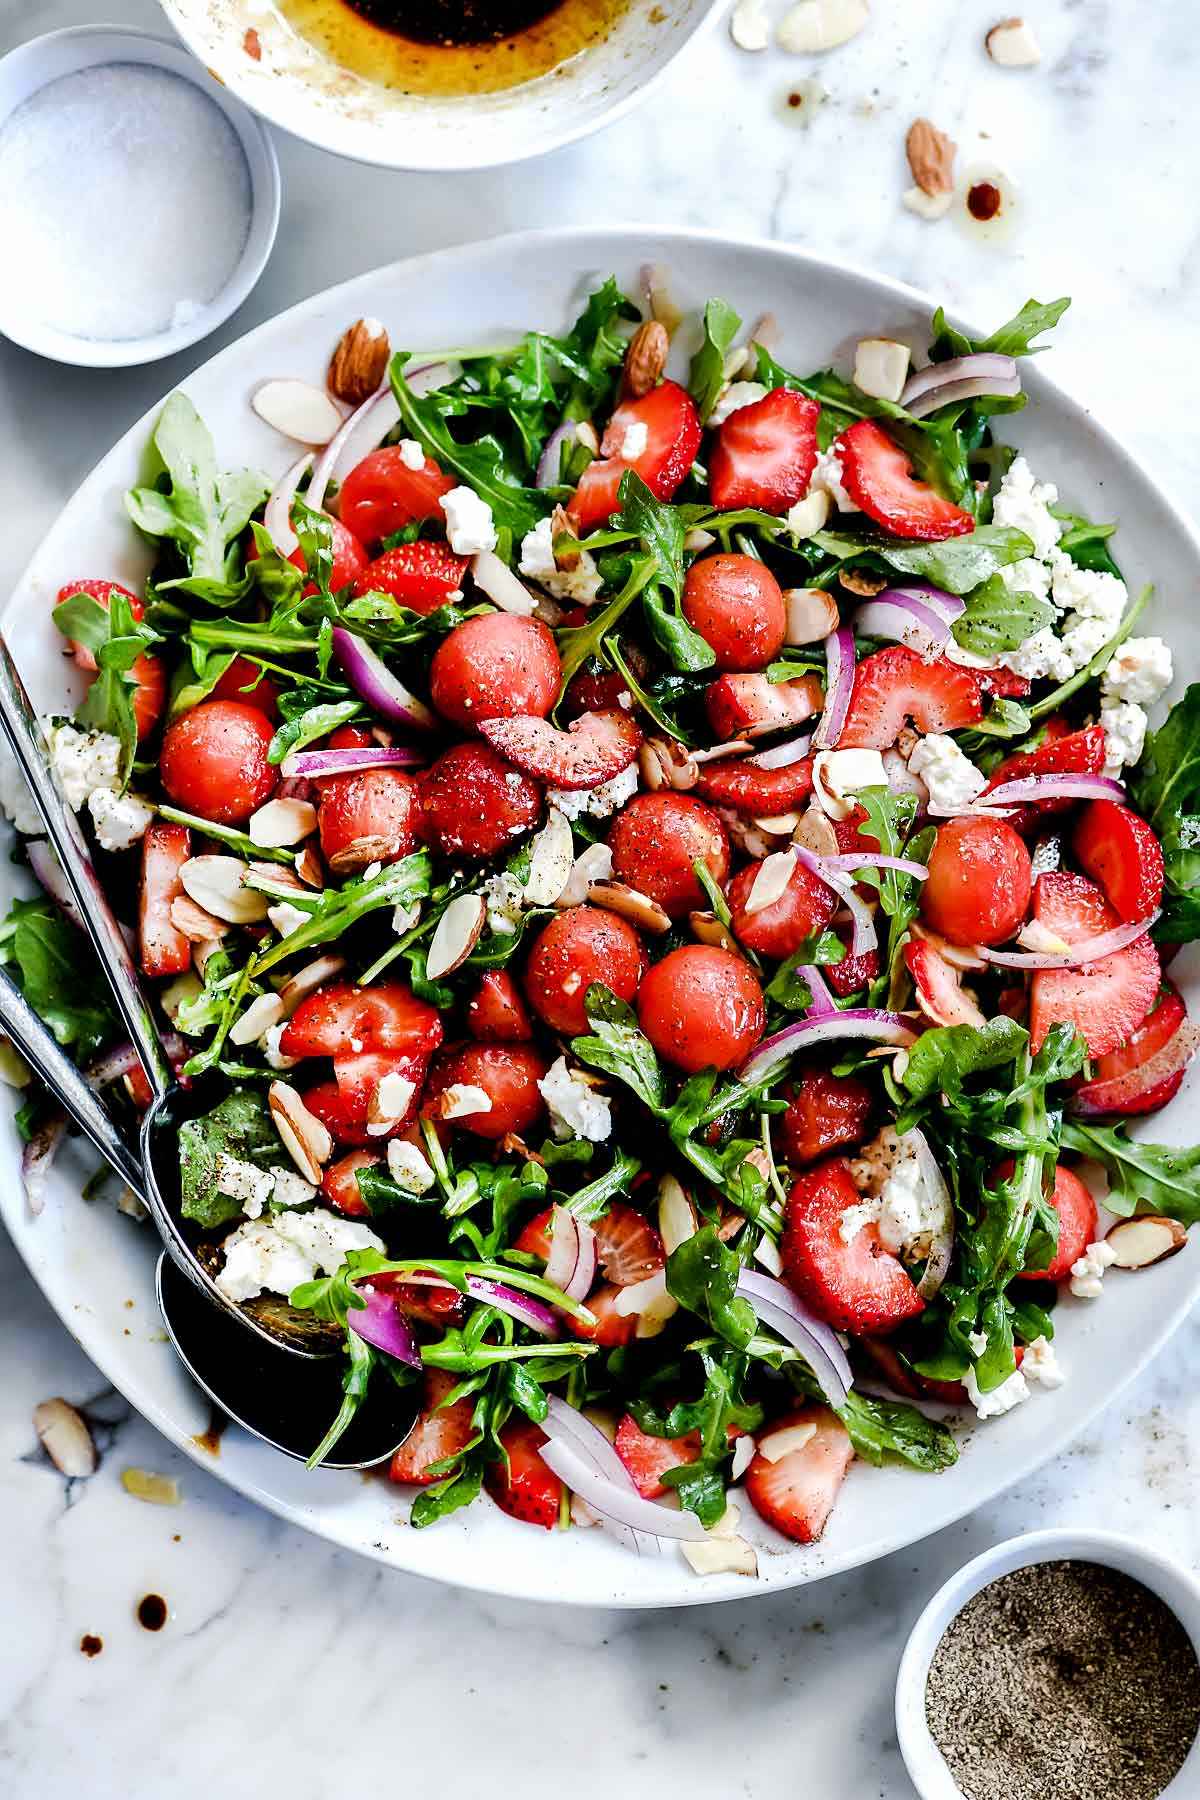 Salada de Morango e Melancia Arugula com Molho Balsâmico #foodiecrush.com #salad #salad #strawberry #arugula #arugula #spring #feta